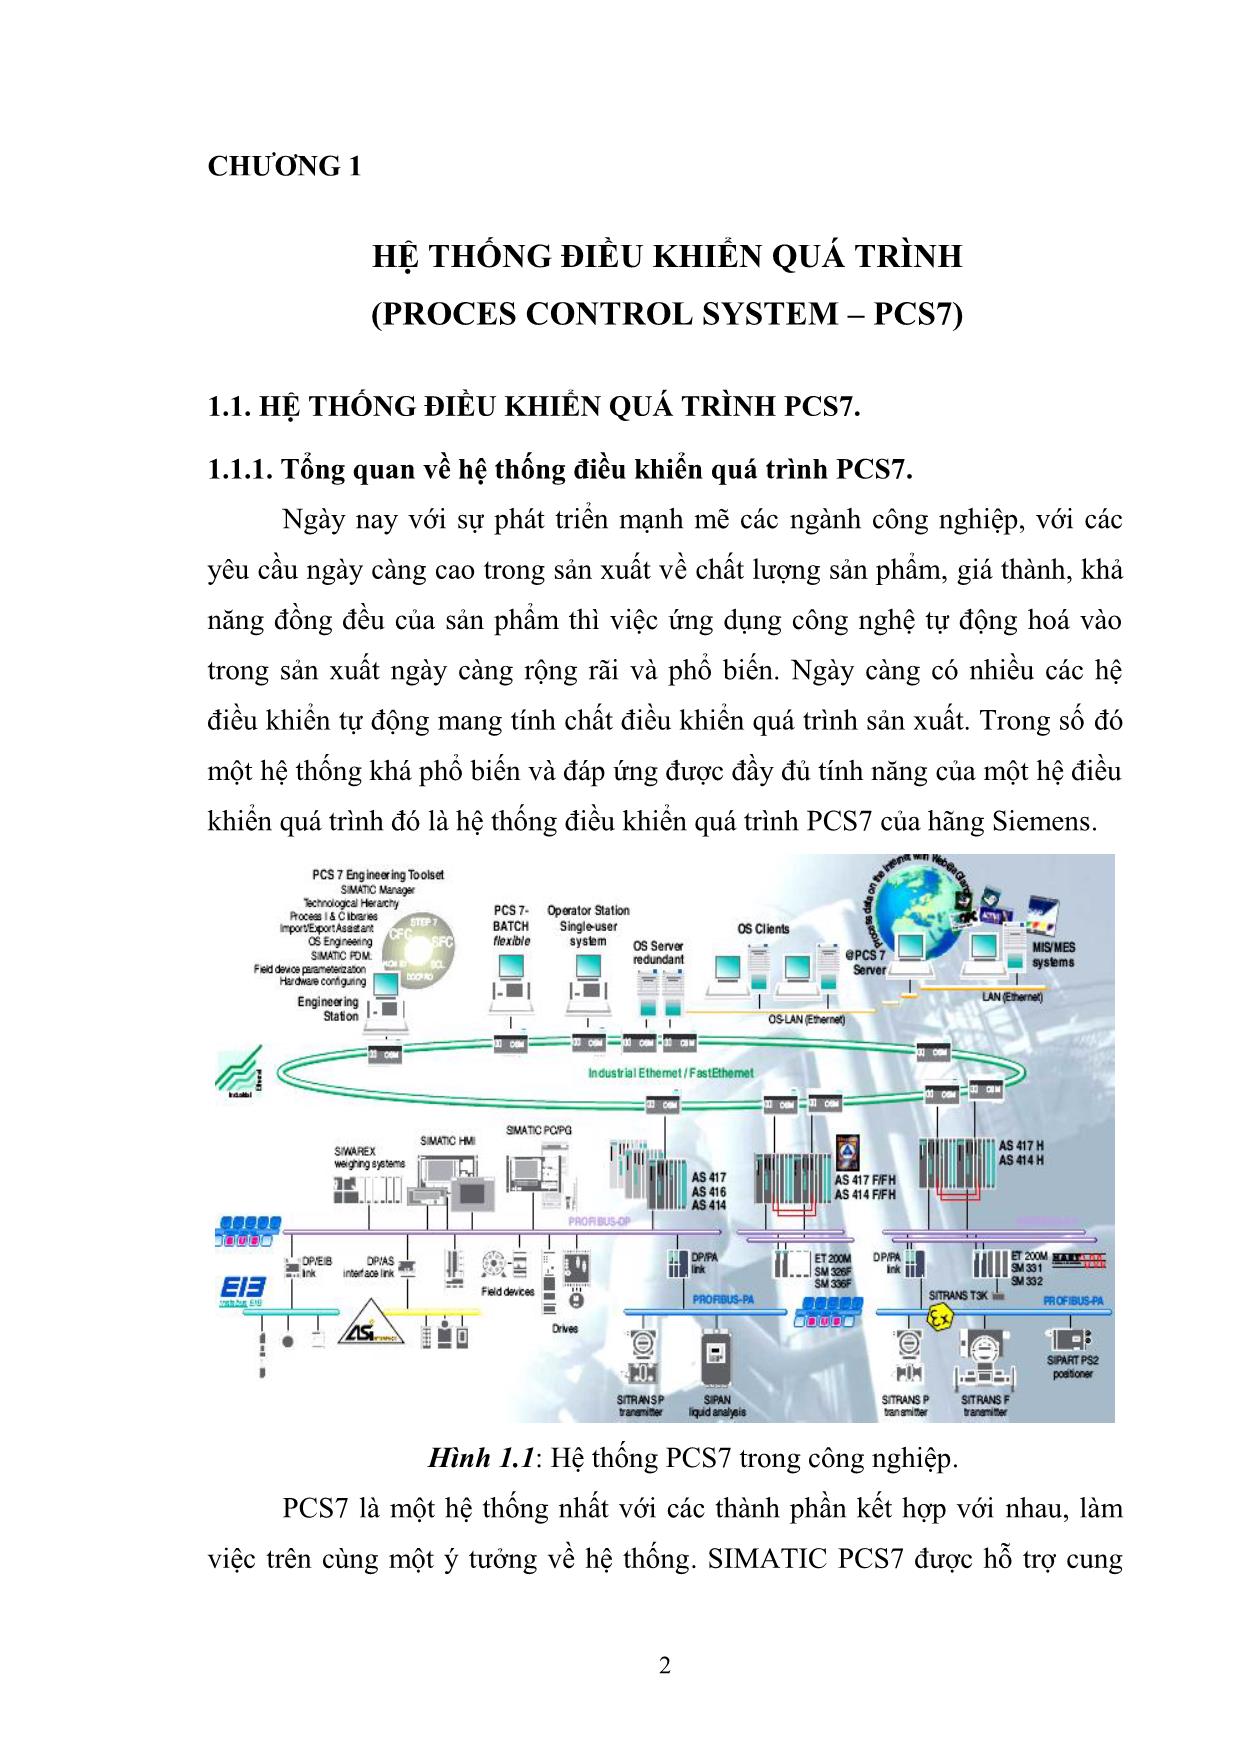 Luận văn Nghiên cứu thiết bị hiện trường thông minh sử dụng trong hệ thống điều khiển quá trình PCS7 của hãng Siemens trang 3